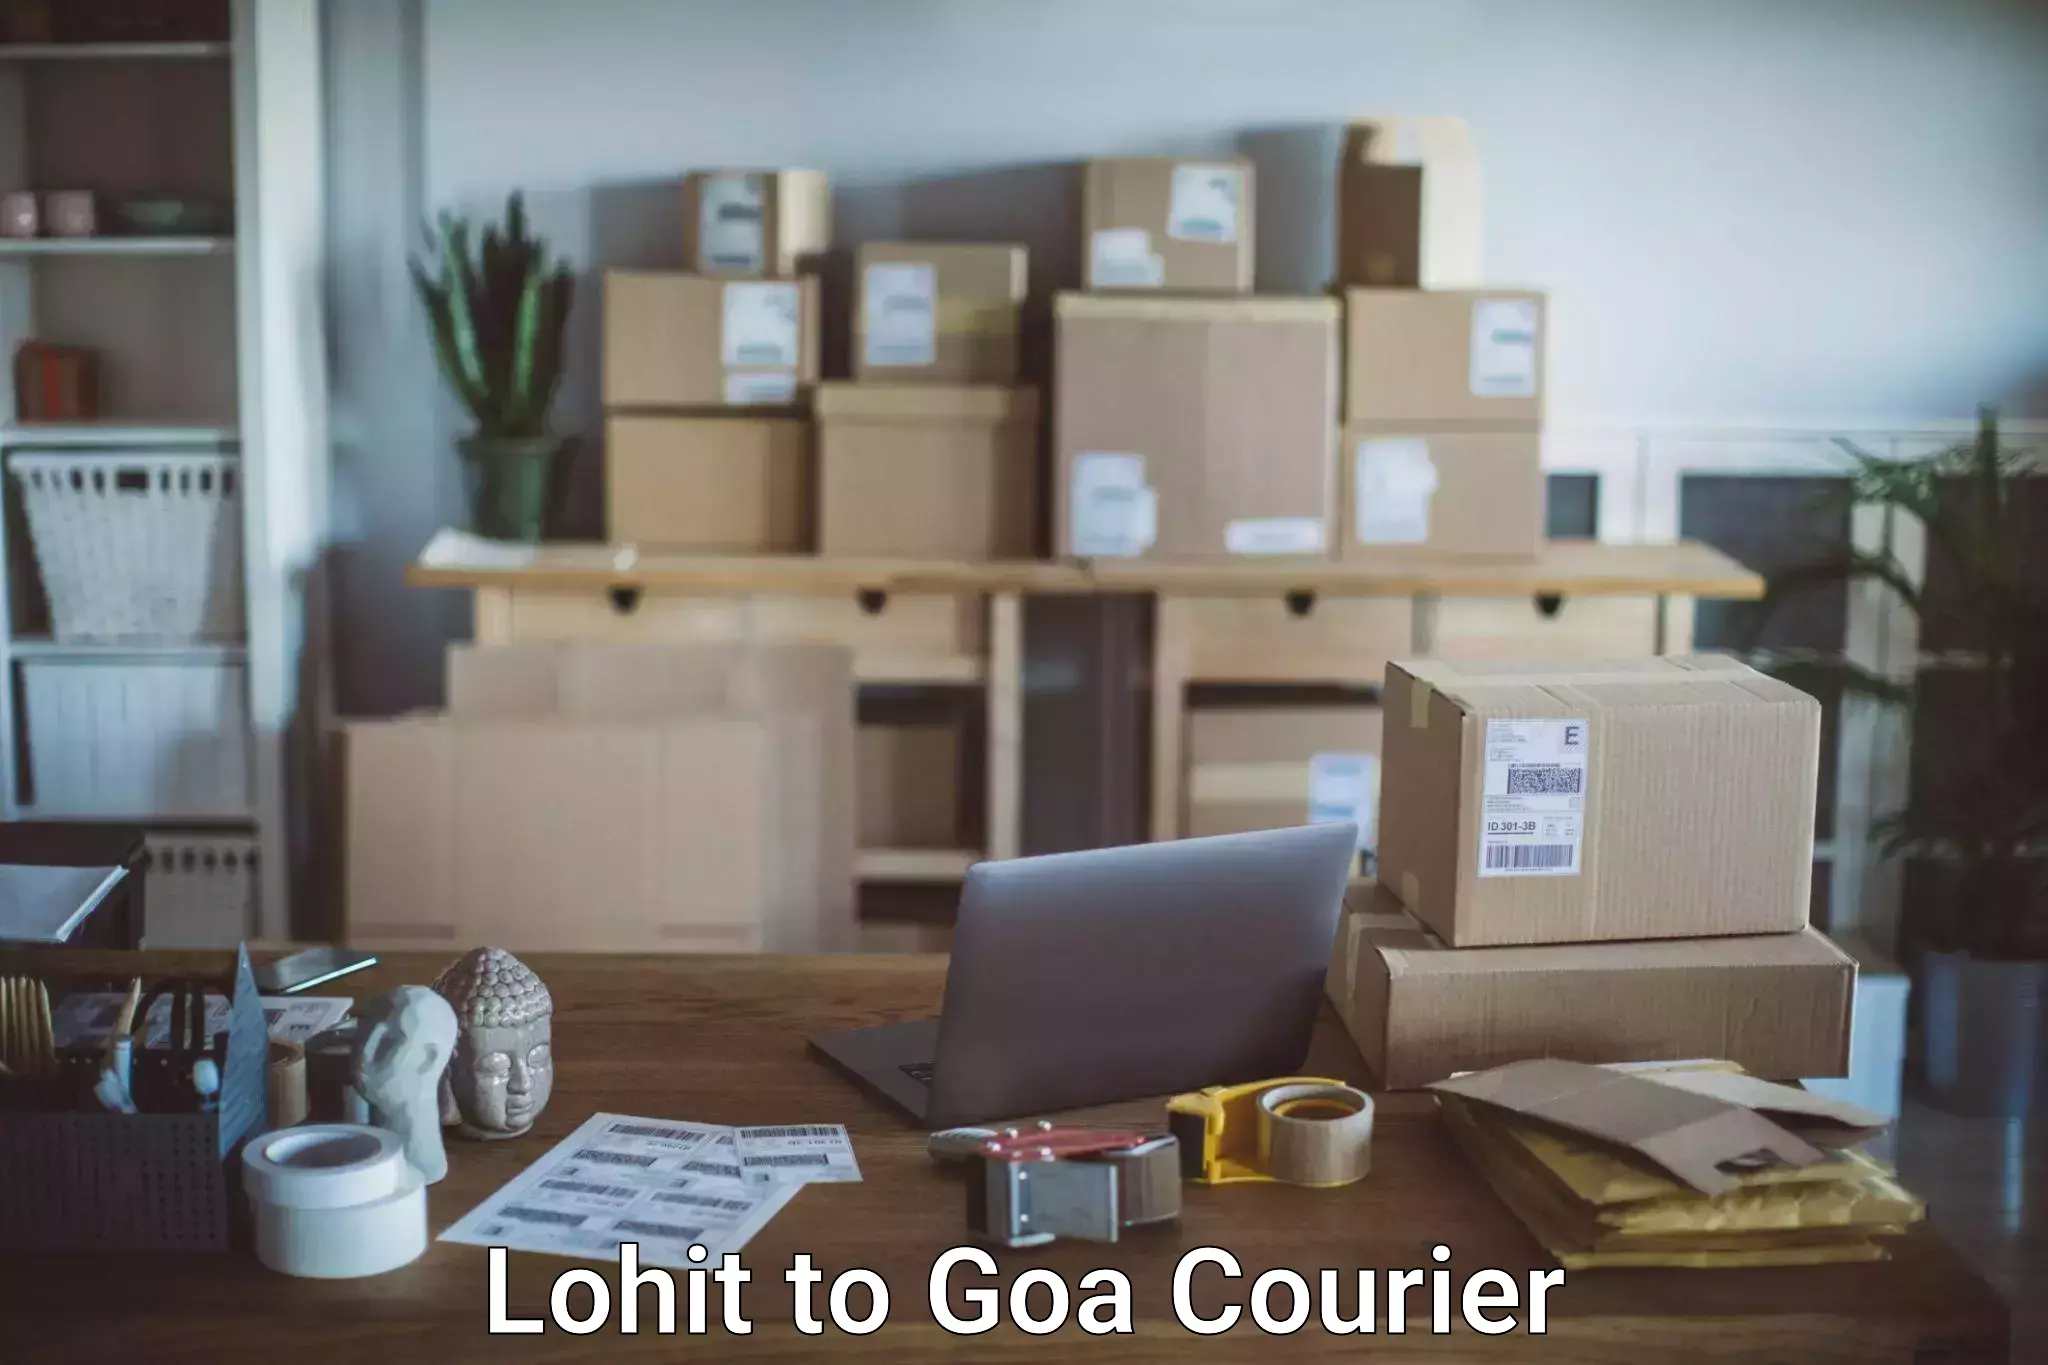 Urgent luggage shipment Lohit to Goa